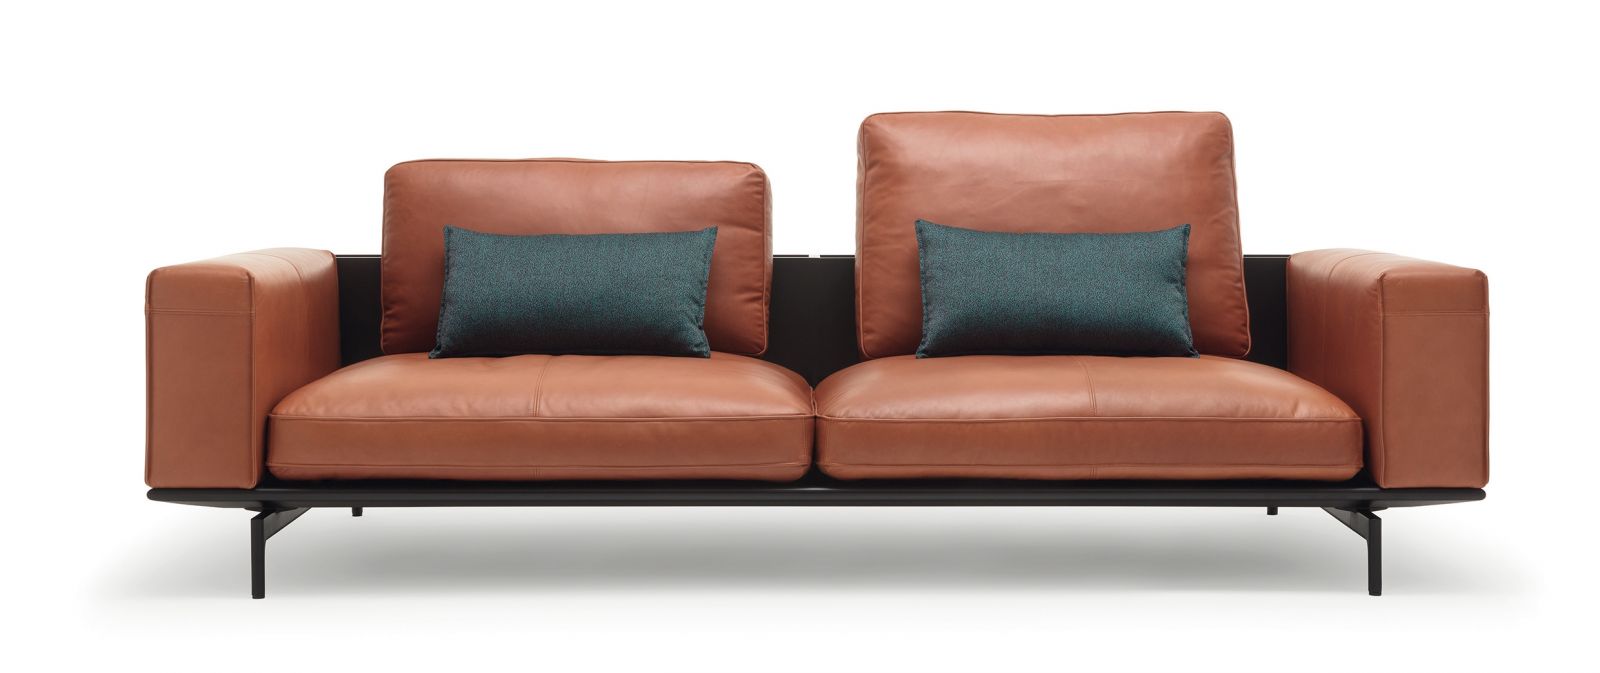 Das Sofaprogramm «Liv» ist modular konzipiert und bietet schier endlose Möglichkeiten, um für jede Situation die richtige Kombination zu finden.